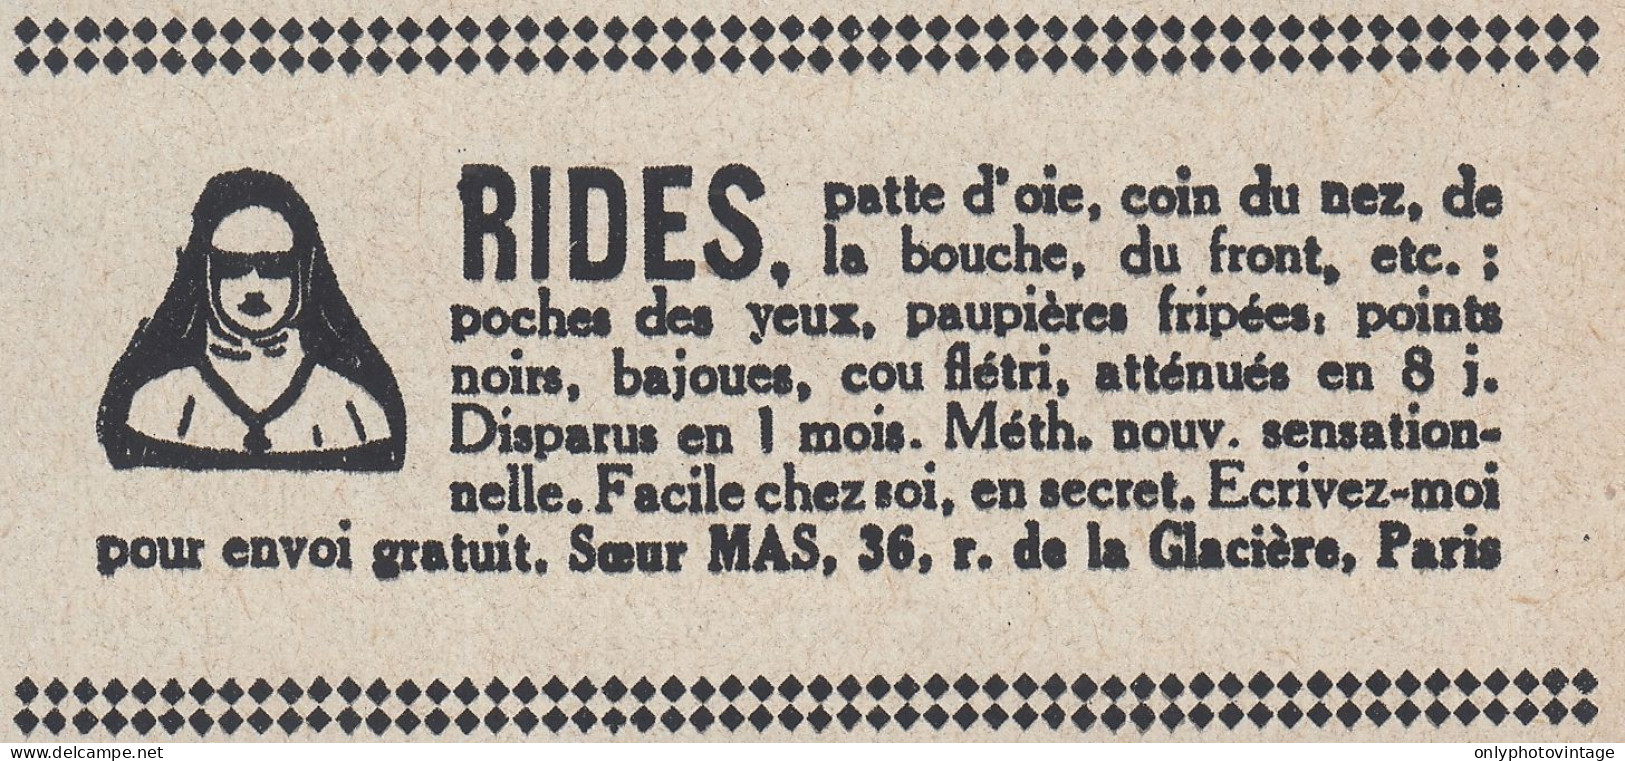 Rides Soeur Mas Paris - 1936 Vintage Advertising - Pubblicit� Epoca - Werbung